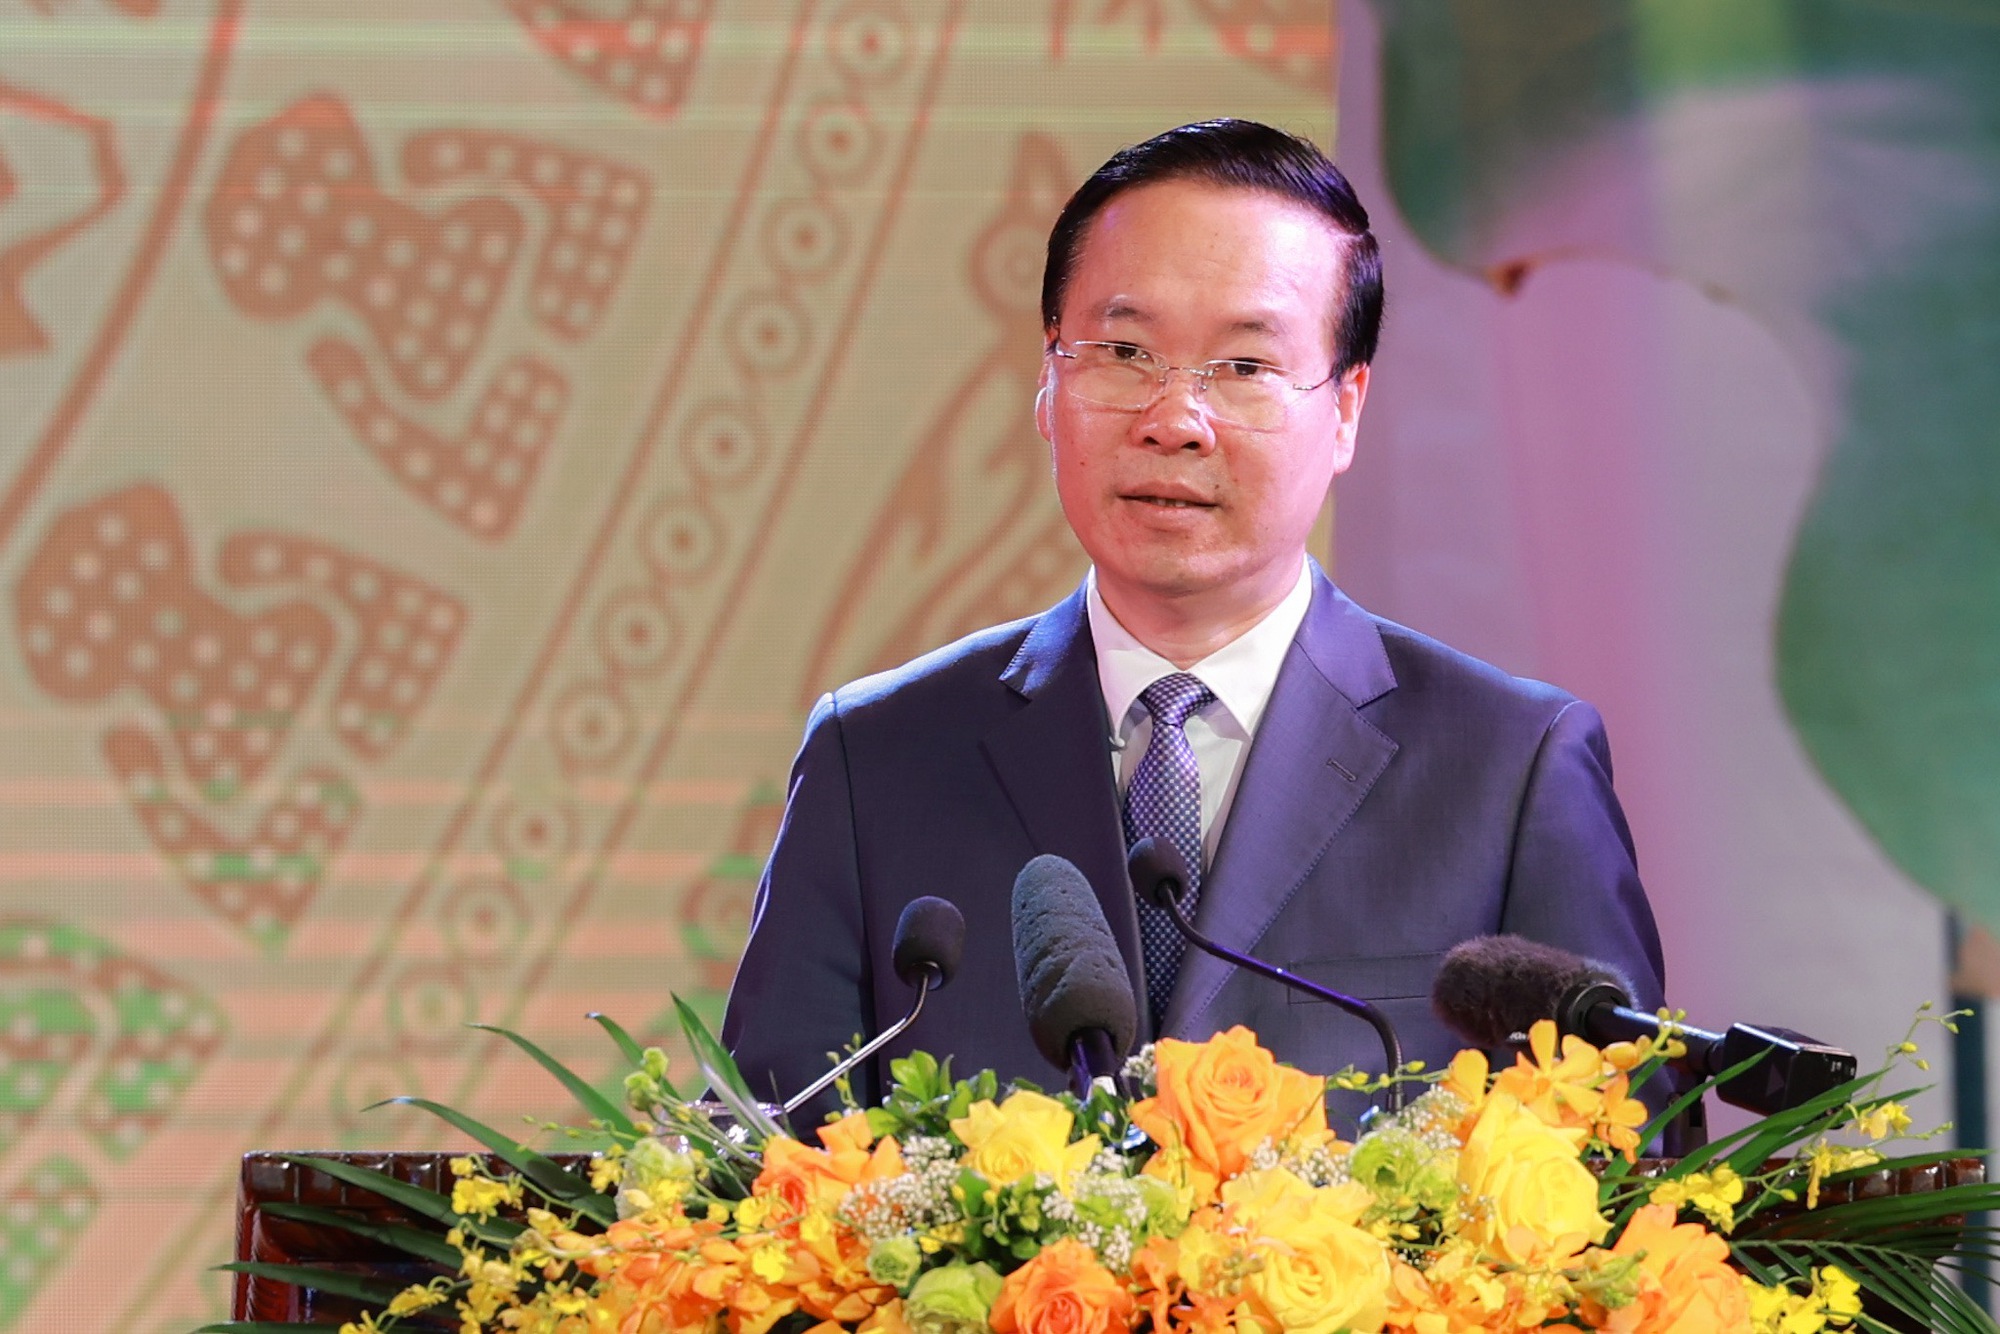 Nhạc sĩ Hồng Đăng, nhà thơ Hoàng Trung Thông được truy tặng giải thưởng Hồ Chí Minh về VHNT - Ảnh 1.